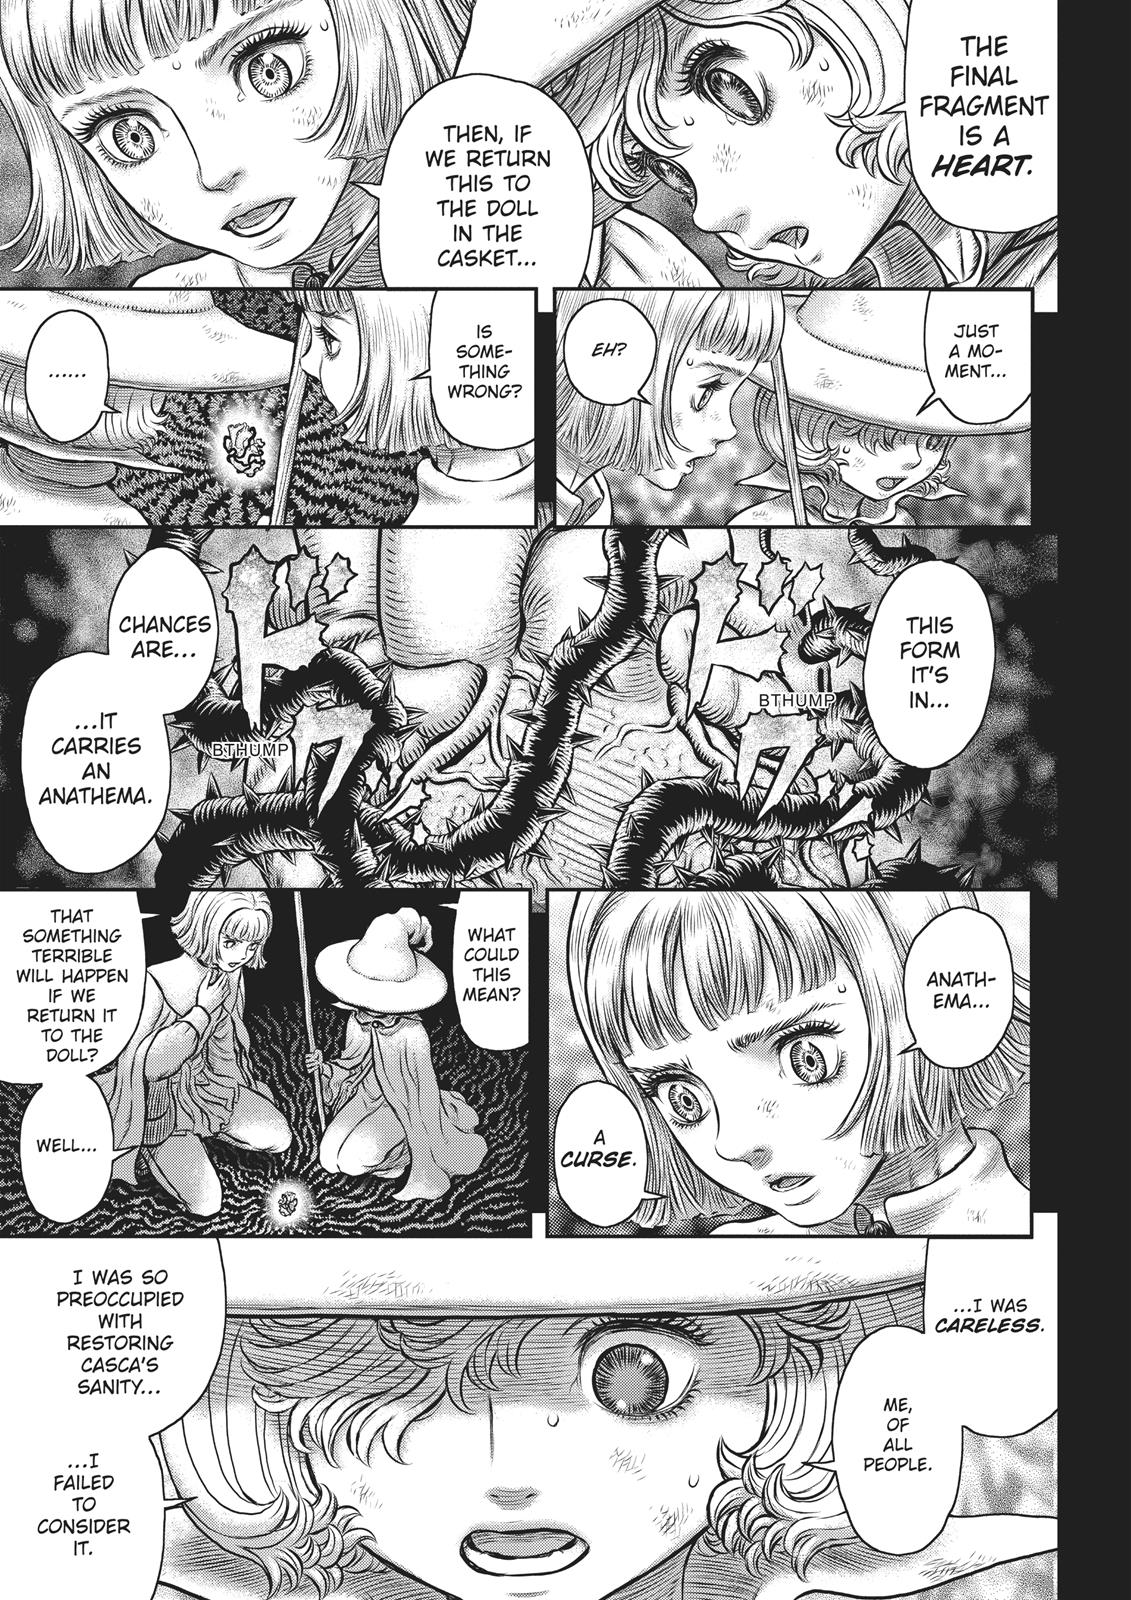 Berserk Manga Chapter 354 image 07